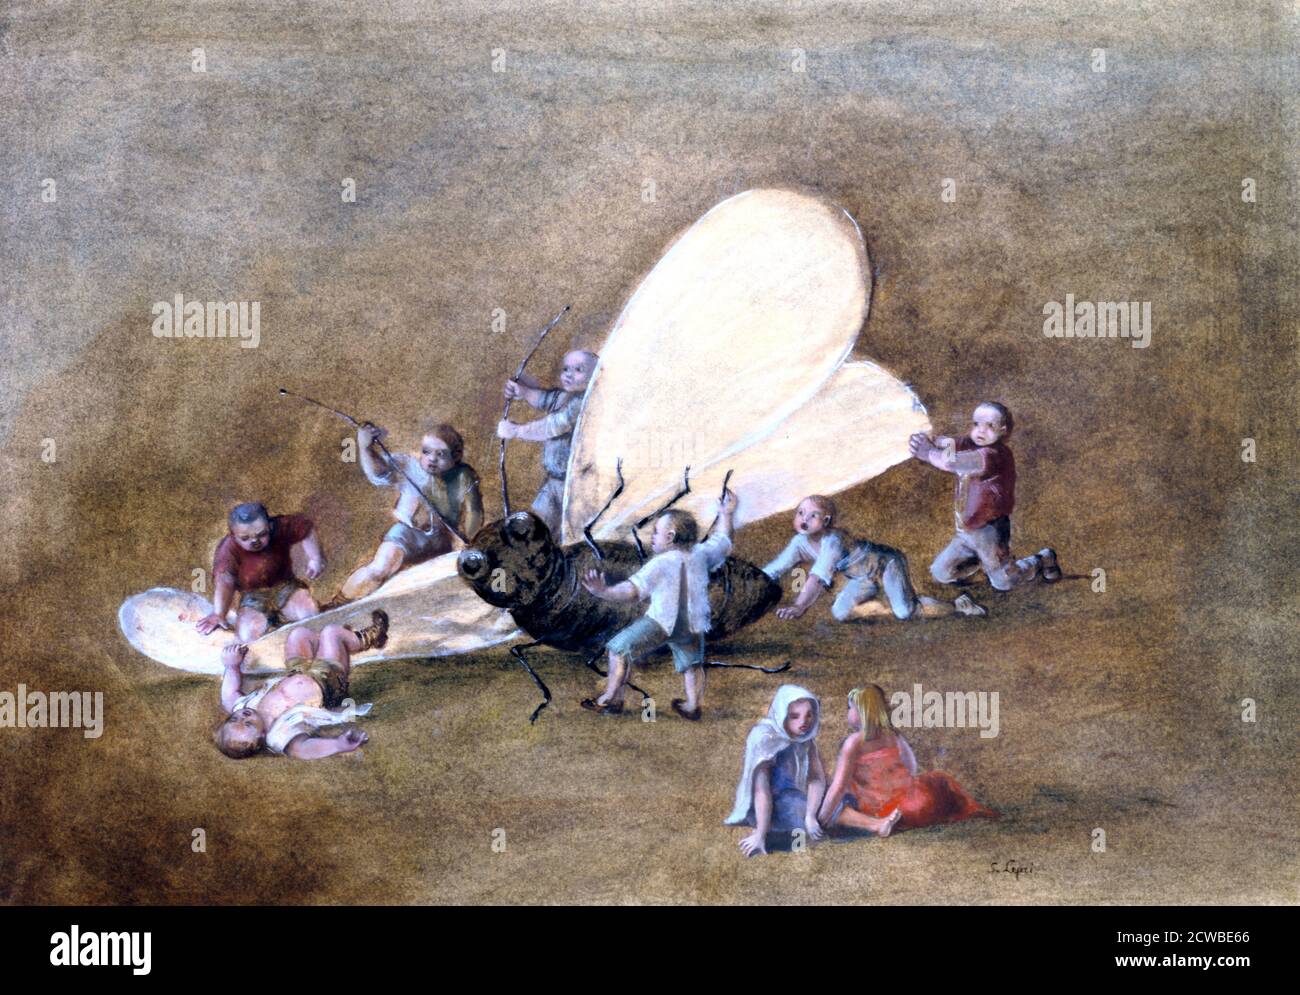 Les enfants cruels», c1850-1890. Artiste: Stanislas Lepine. Lepine était un peintre français spécialisé dans les paysages, en particulier les vues sur la Seine. Banque D'Images